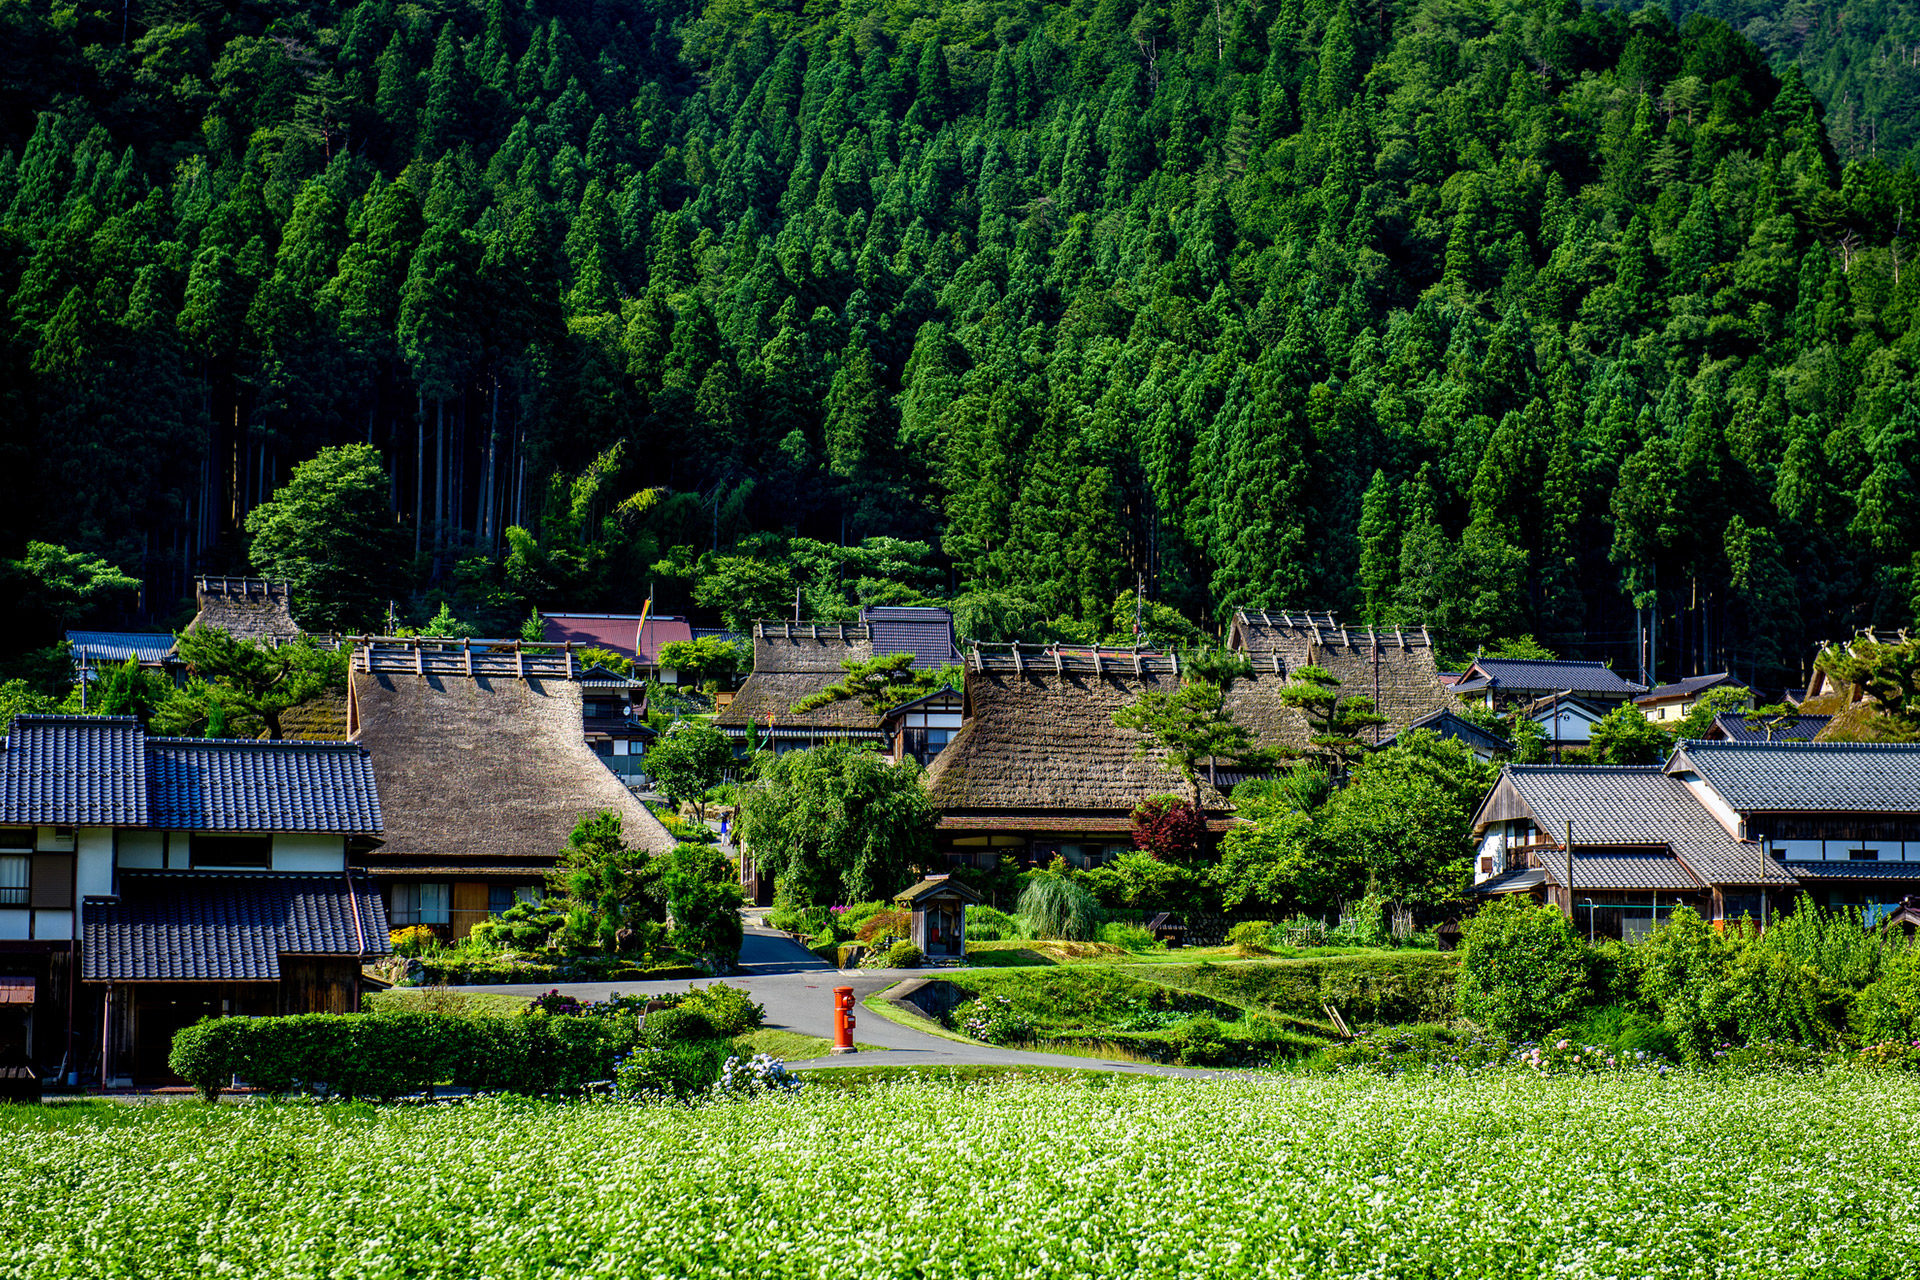 夏休みは京都で充実した１日を過ごしませんか ぜひおすすめしたい夏休み観光スポット Caedekyoto カエデ京都 紅葉と伝統美を引き継ぐバッグ